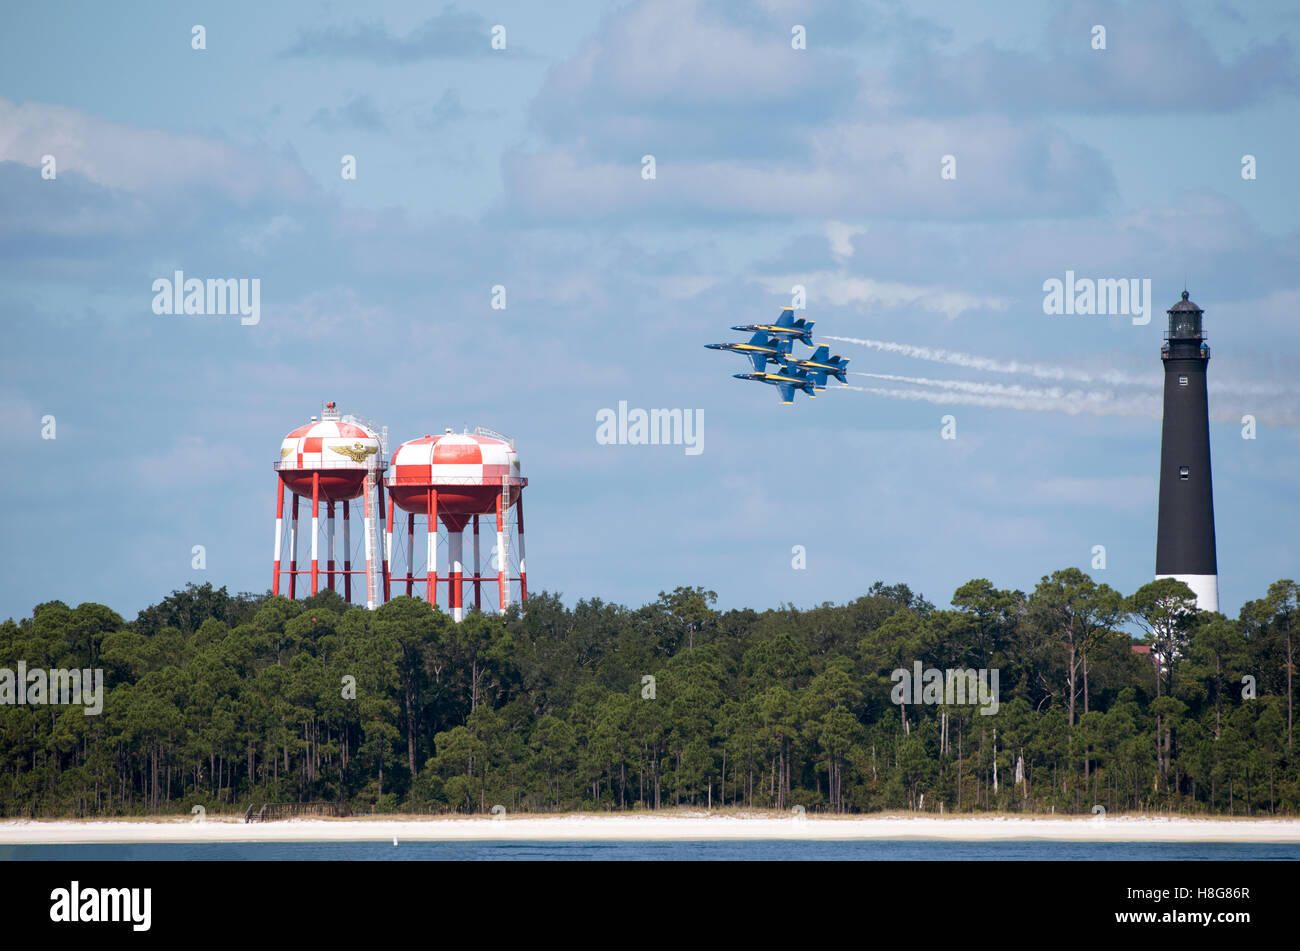 Pensacola Florida USA - avions militaires volant en formation sur Pensacola phare et vu de l'île de Santa Rosa Banque D'Images